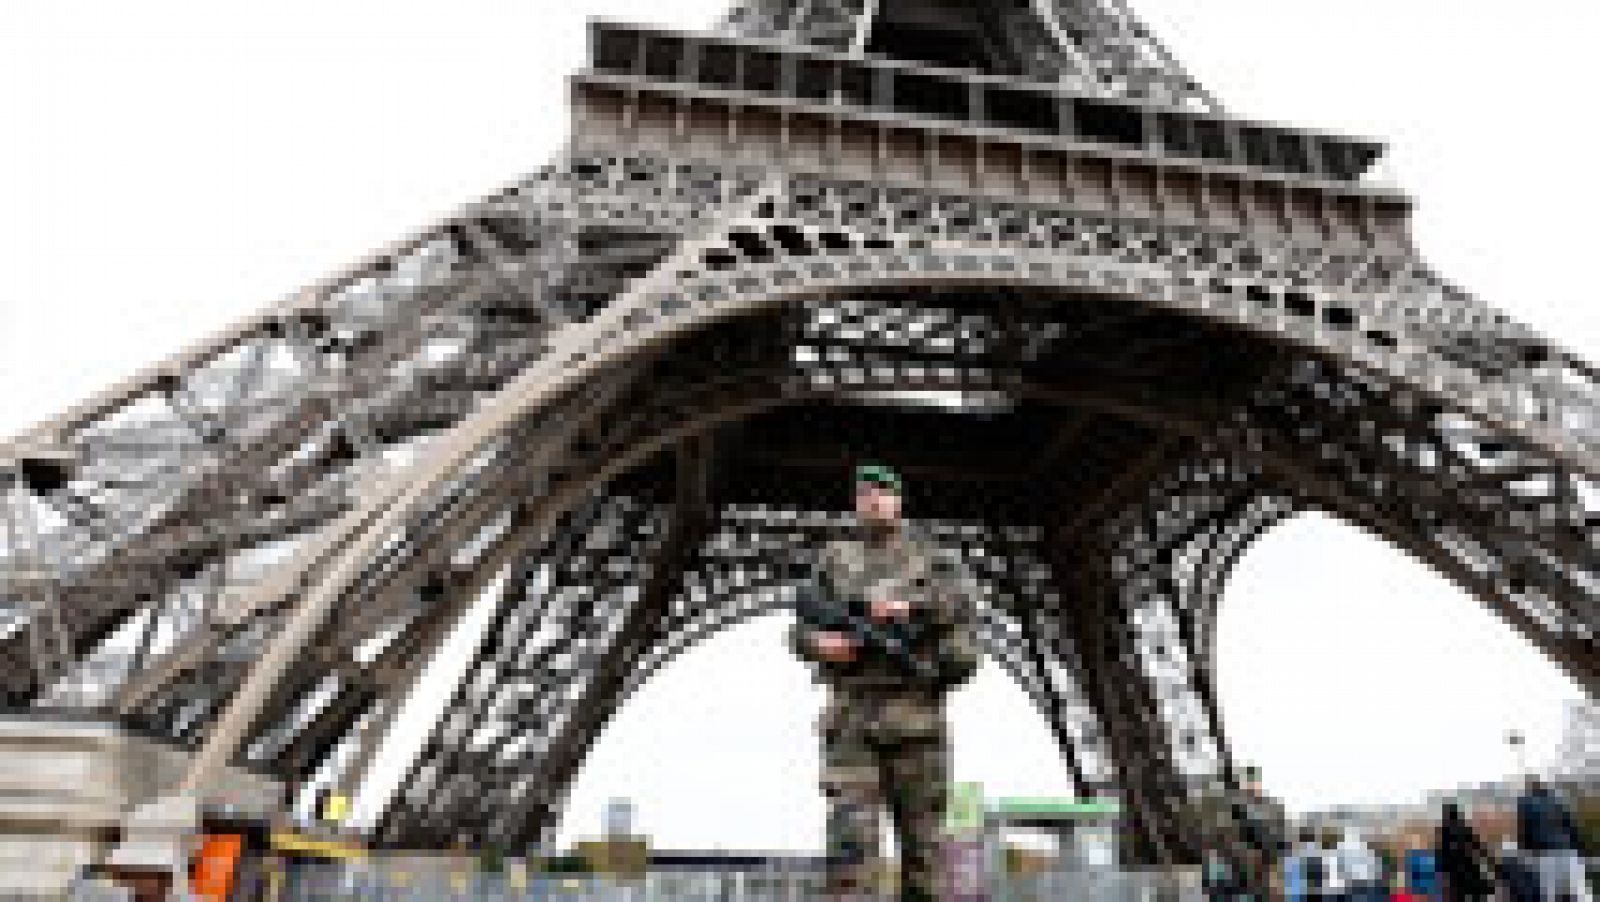 Atentados en París: "Los atentados de París fueron anunciados expresamente en el mes de julio"